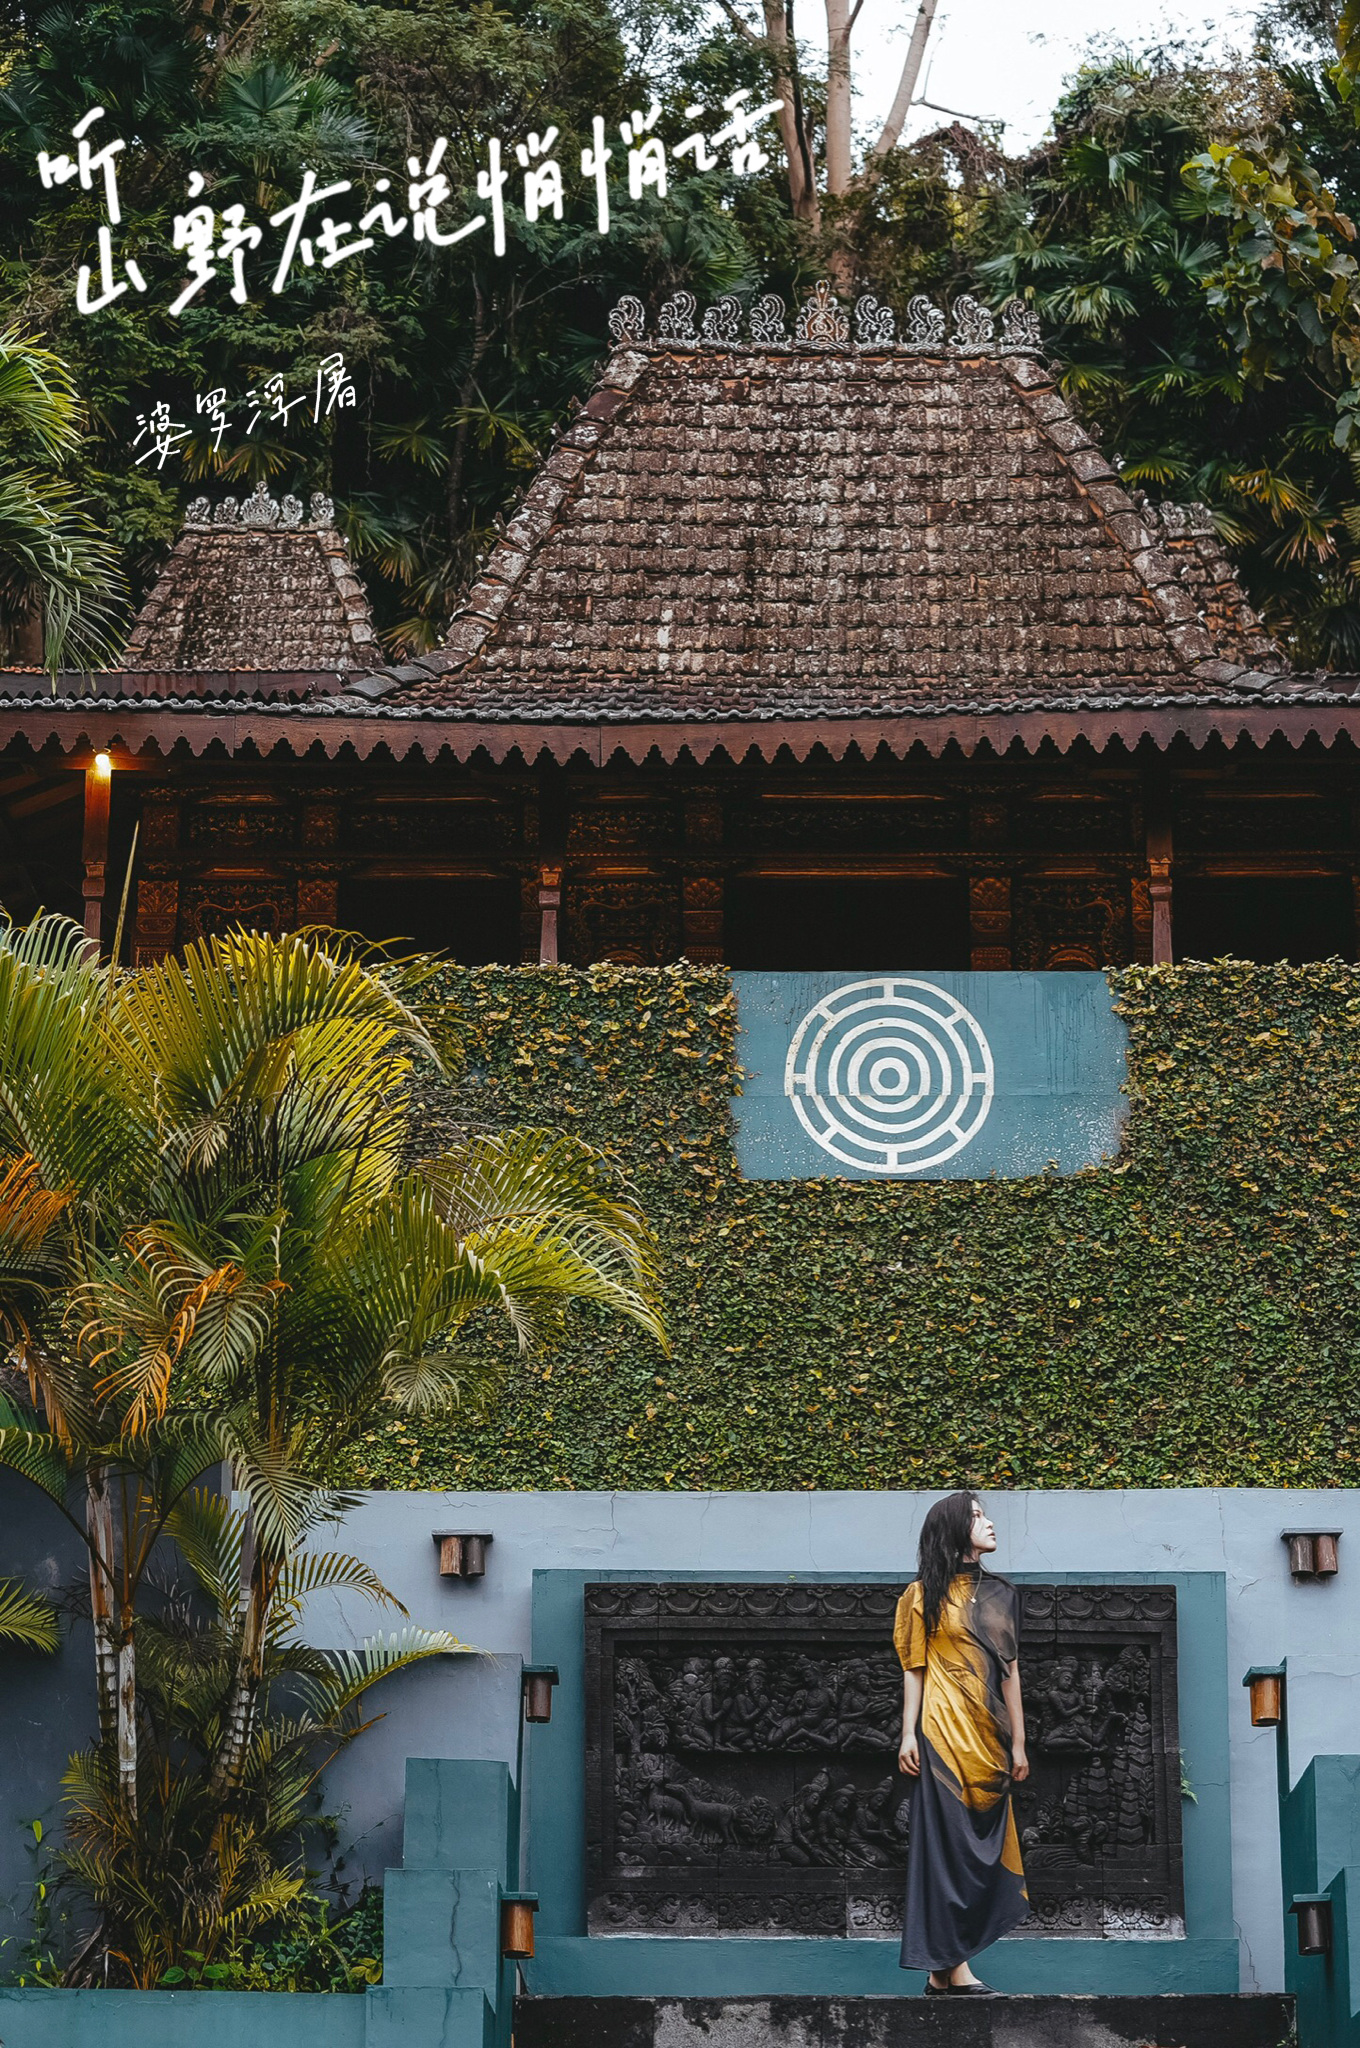 婆罗浮屠酒店｜与古刹庙宇幻化为一体，独享印尼质朴的山野时光